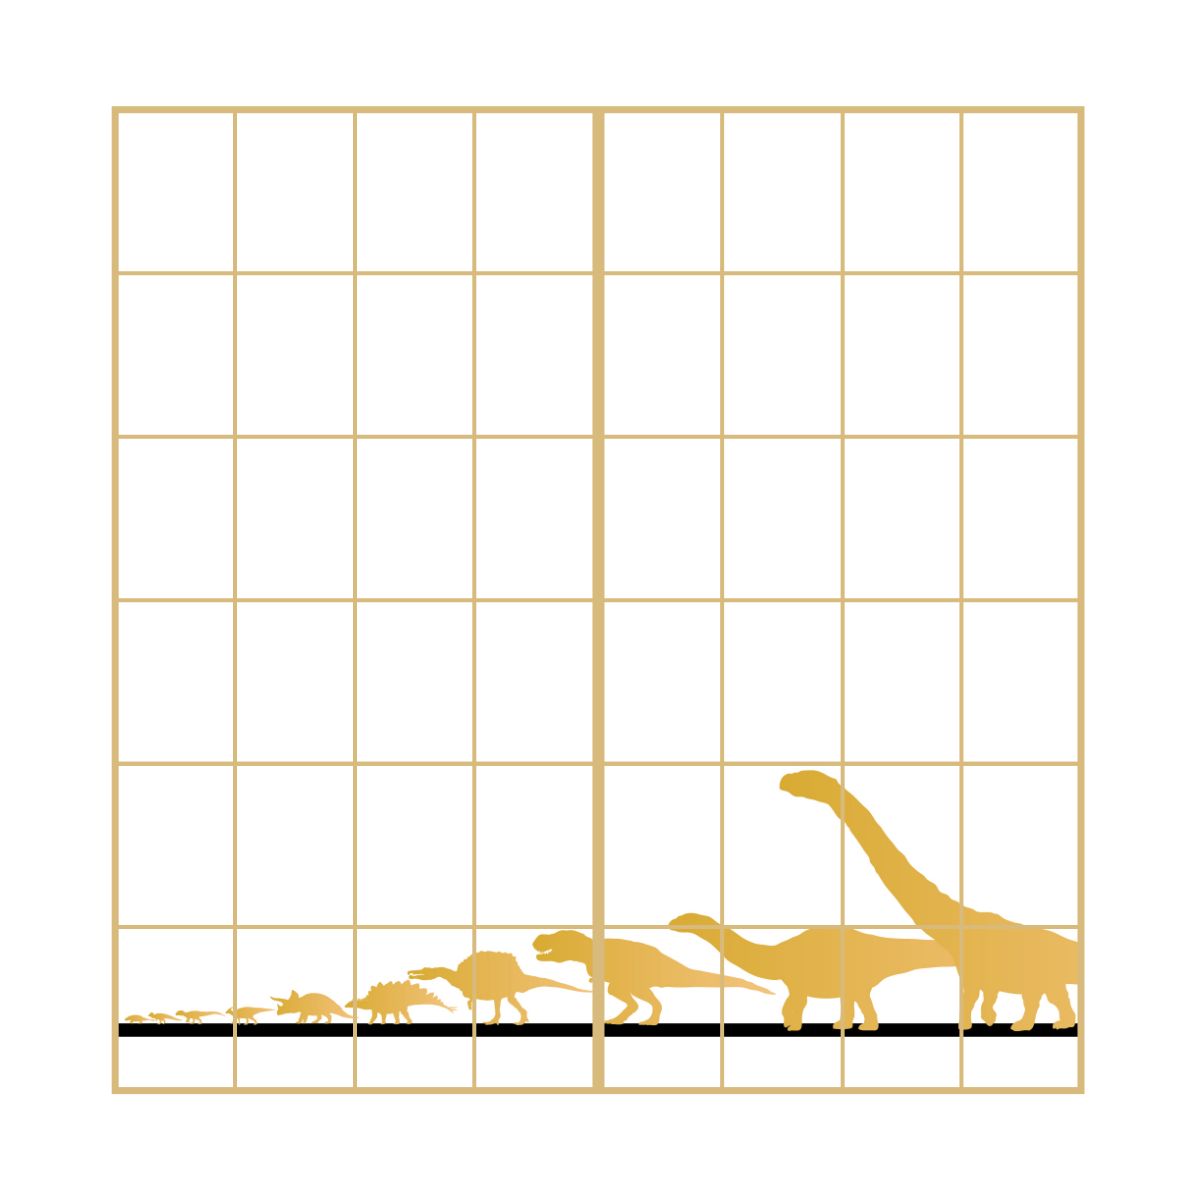 恐竜王国シリーズ シルエット　ライン 障子紙 92cm×184cm 2枚入り JP-022S のり貼りタイプ アサヒペン 恐竜 古代 迫力 柄 和室 洋室 洋風 モダン インテリア